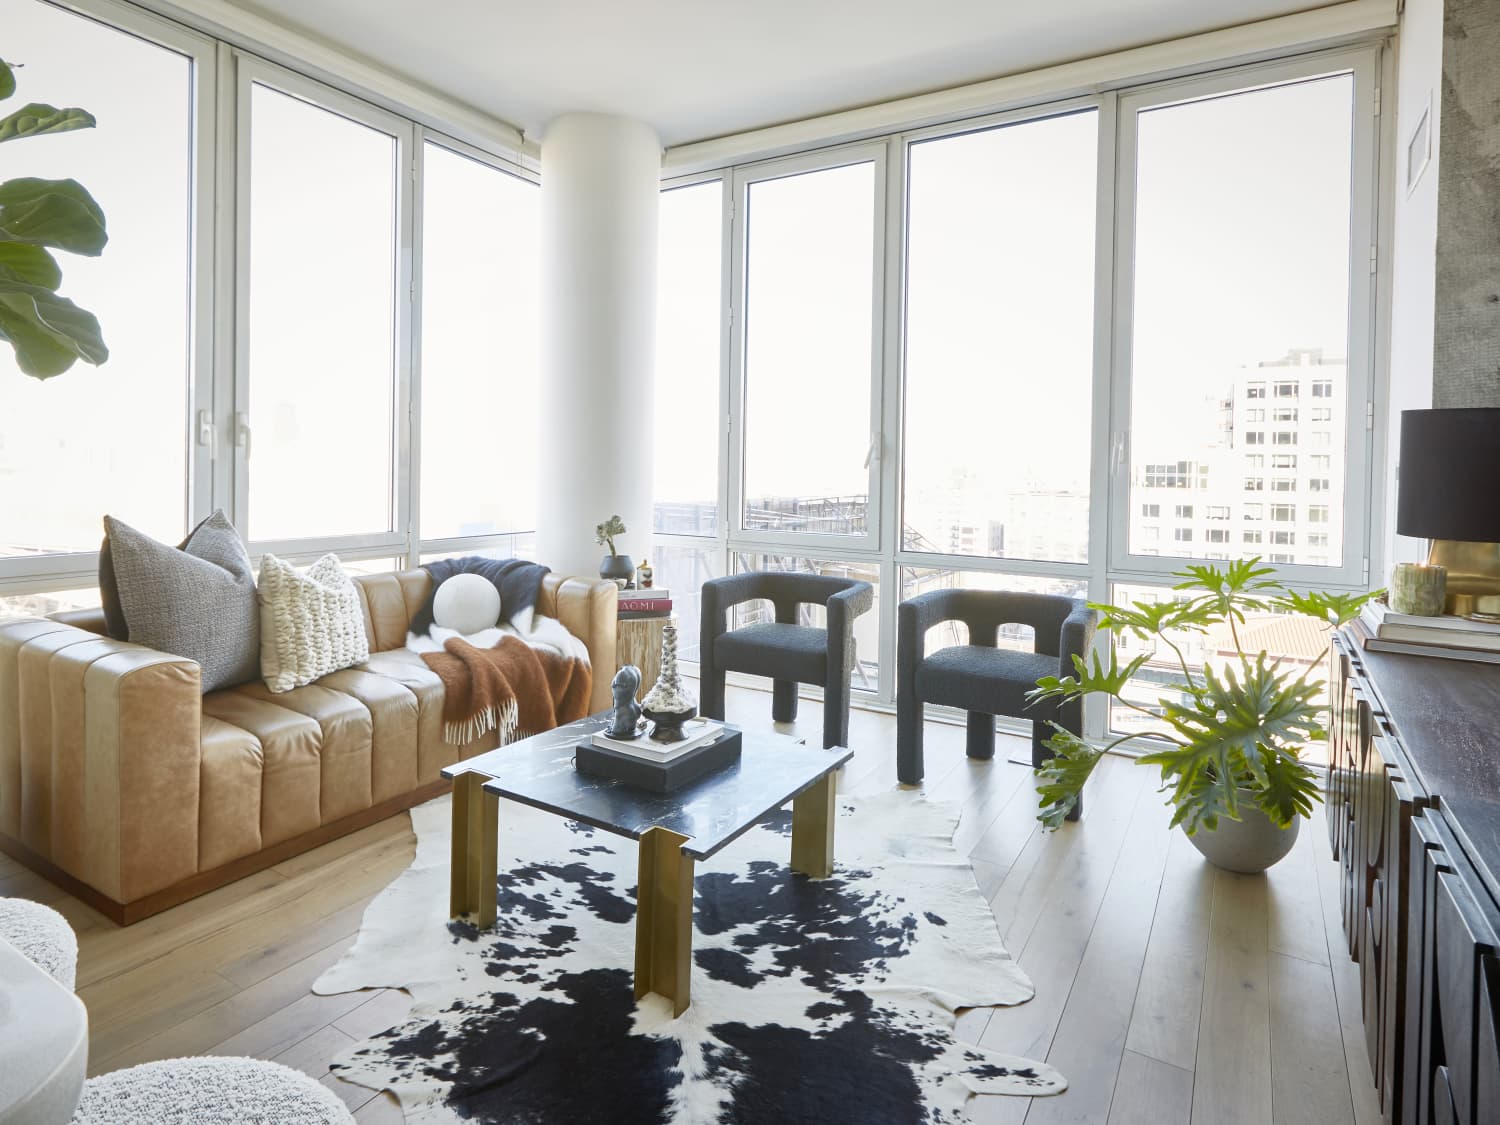 9 Natural Decor Ideas for an Outdoor-Inspired Home - Decorilla Online  Interior Design